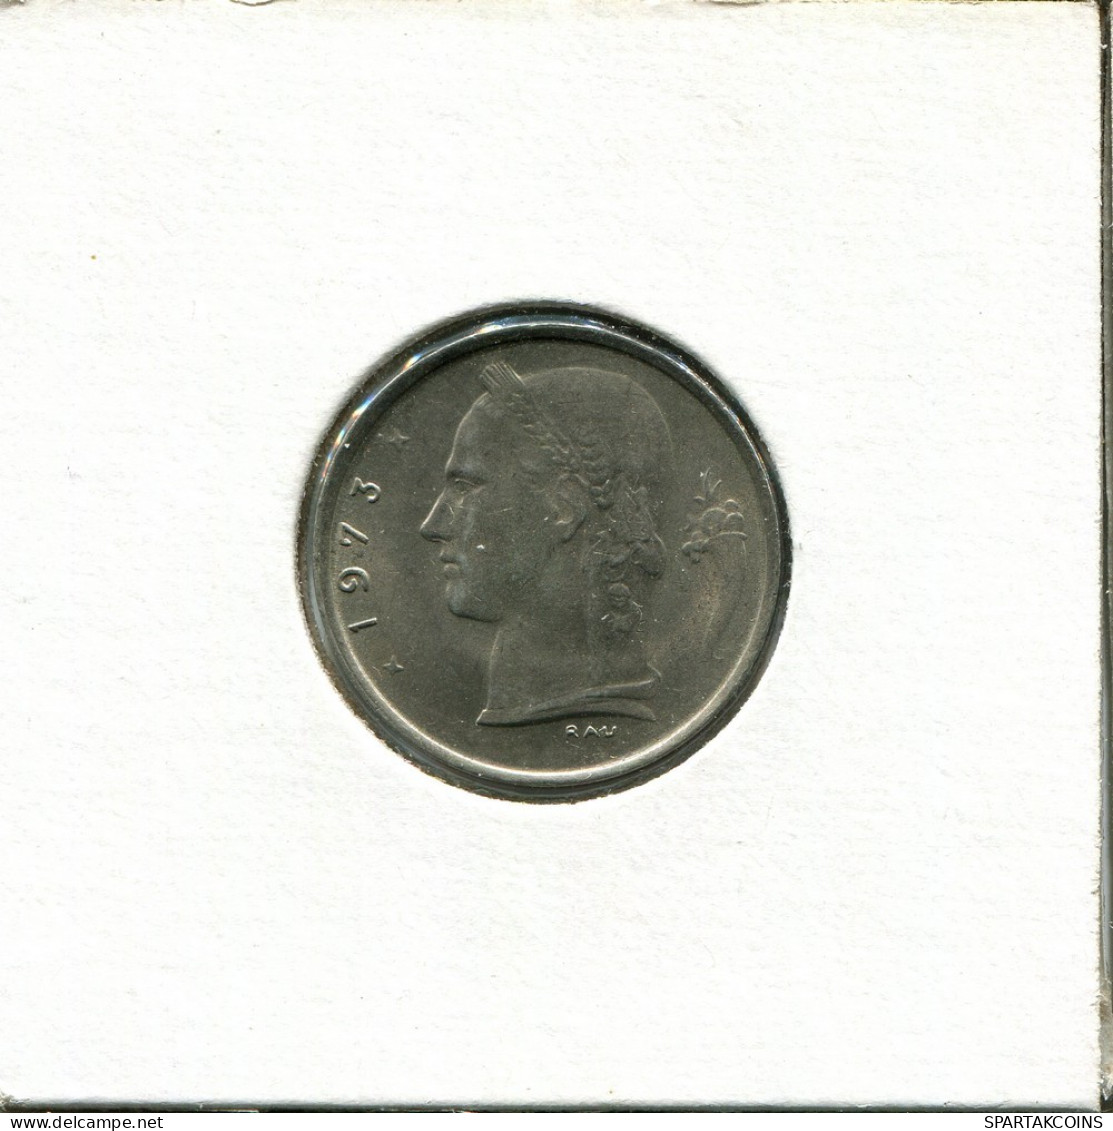 1 FRANC 1973 FRENCH Text BÉLGICA BELGIUM Moneda #AU033.E.A - 1 Franc